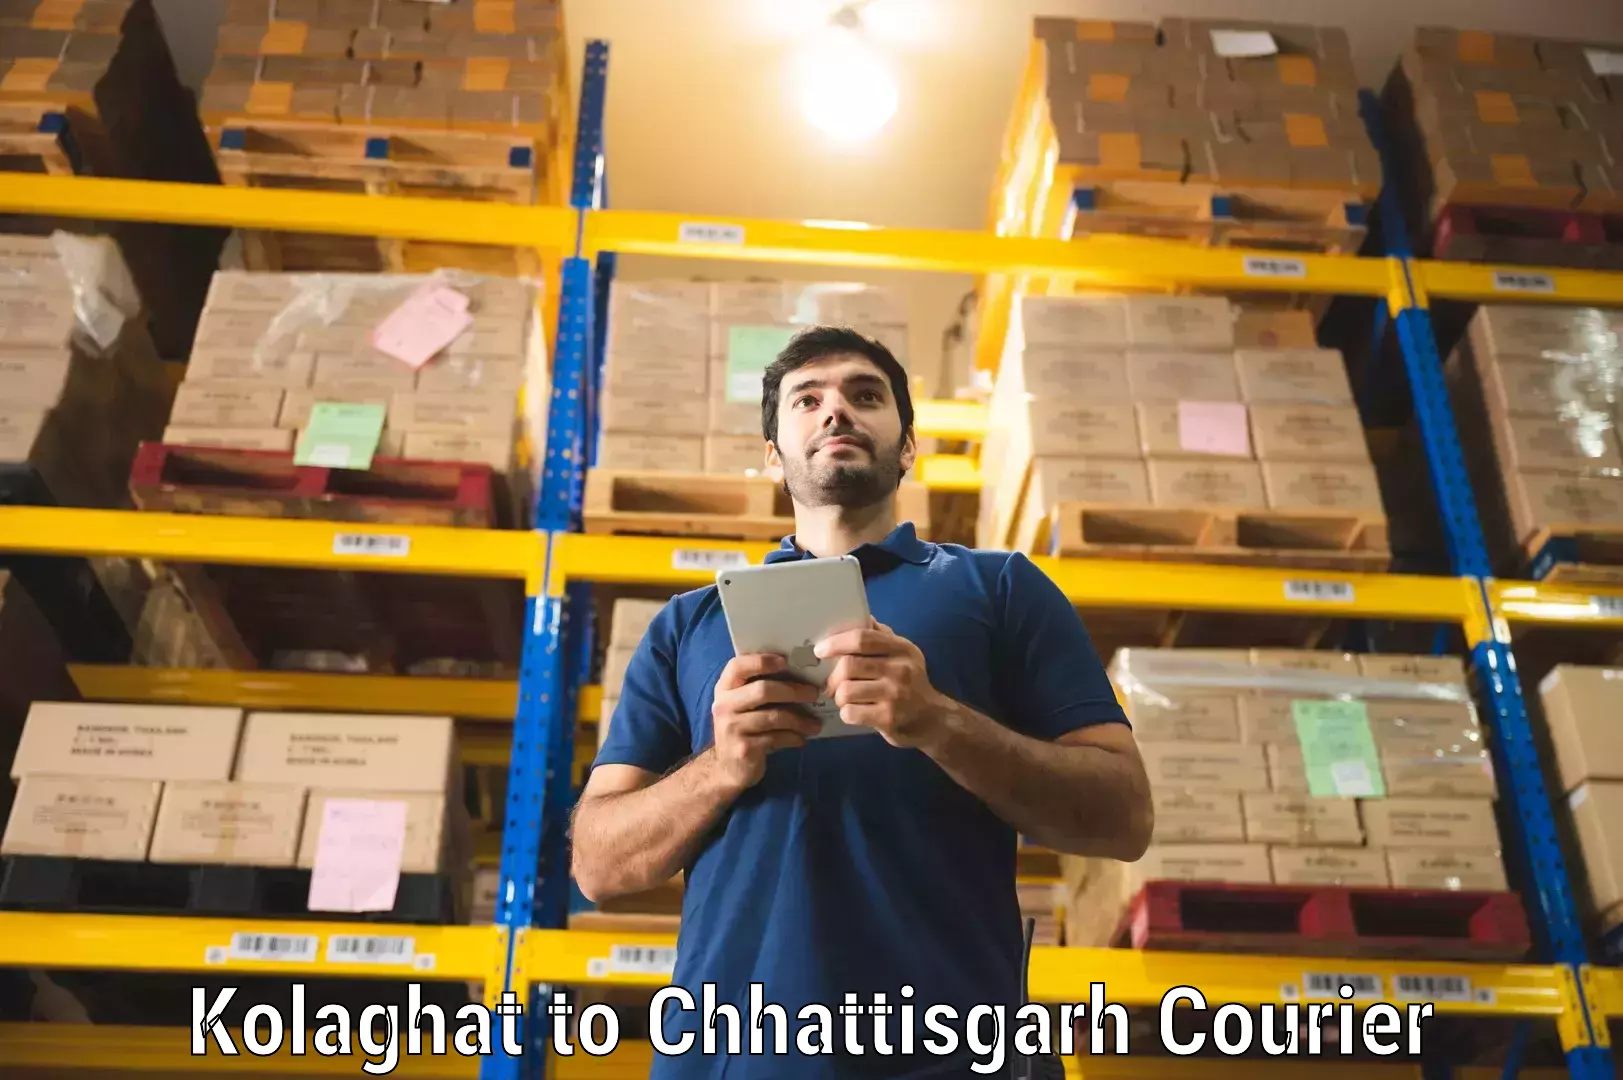 Multi-city courier Kolaghat to Chhattisgarh